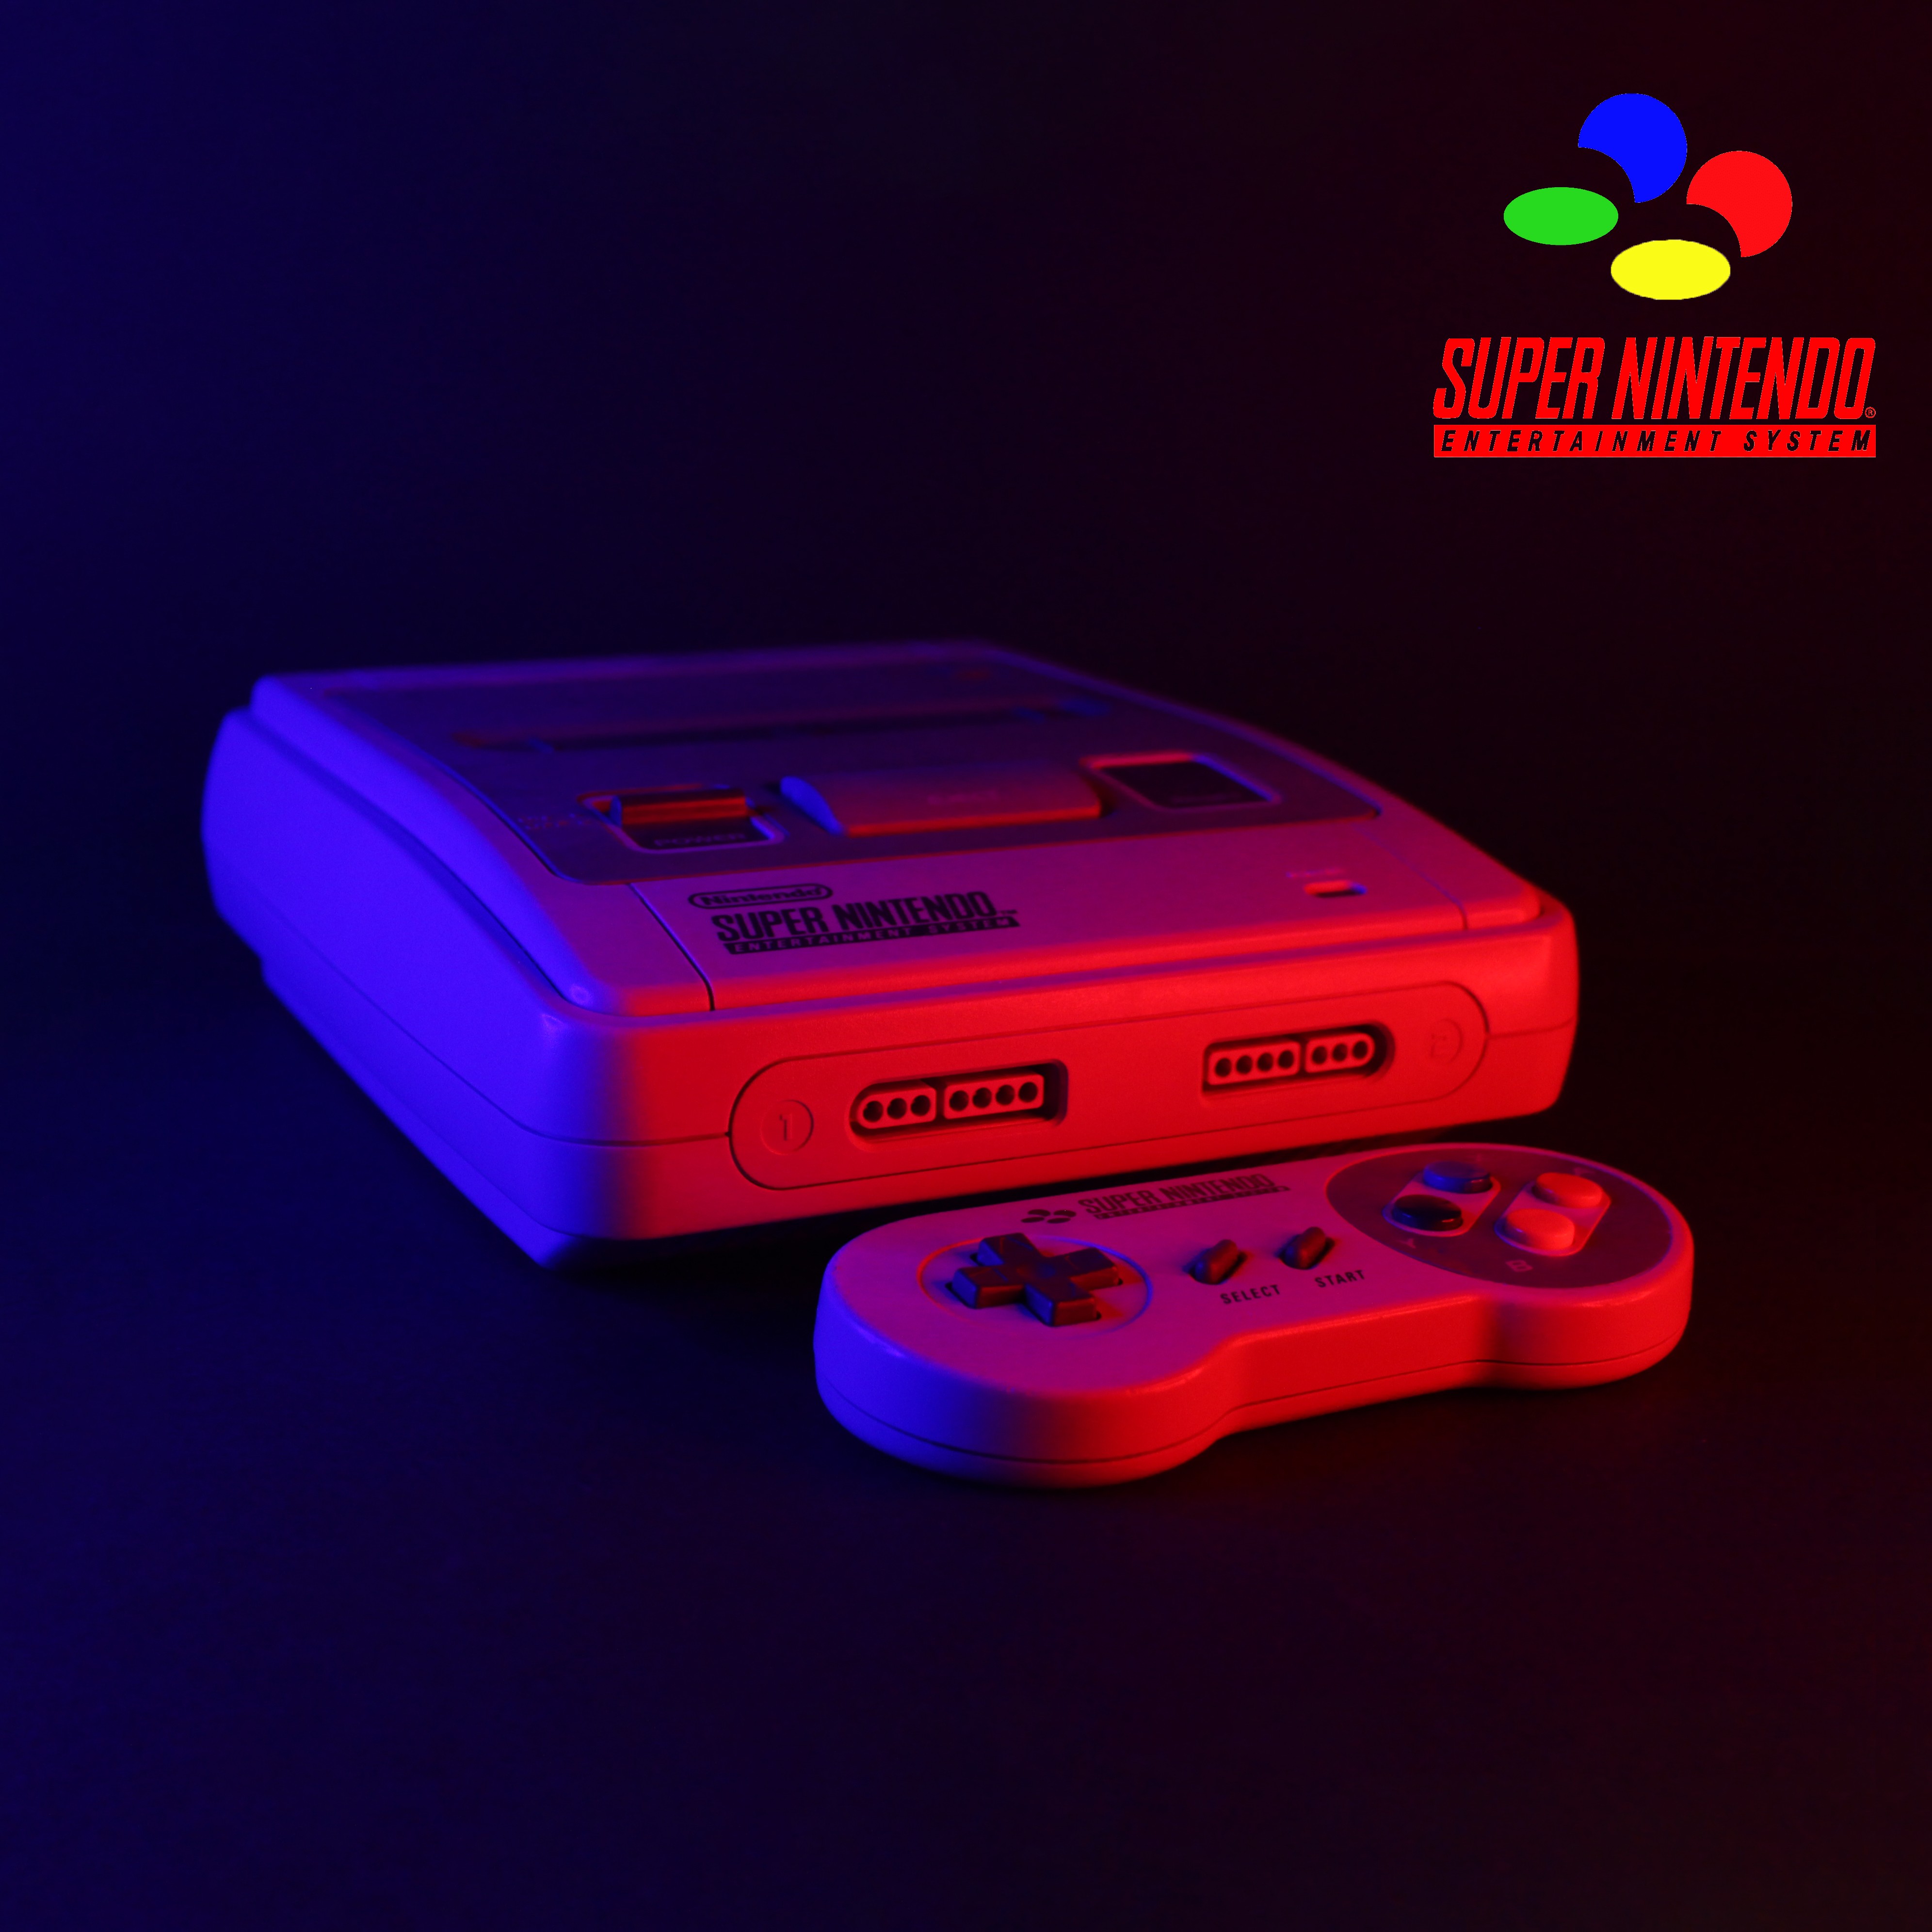 Super Nintendo/Famicom